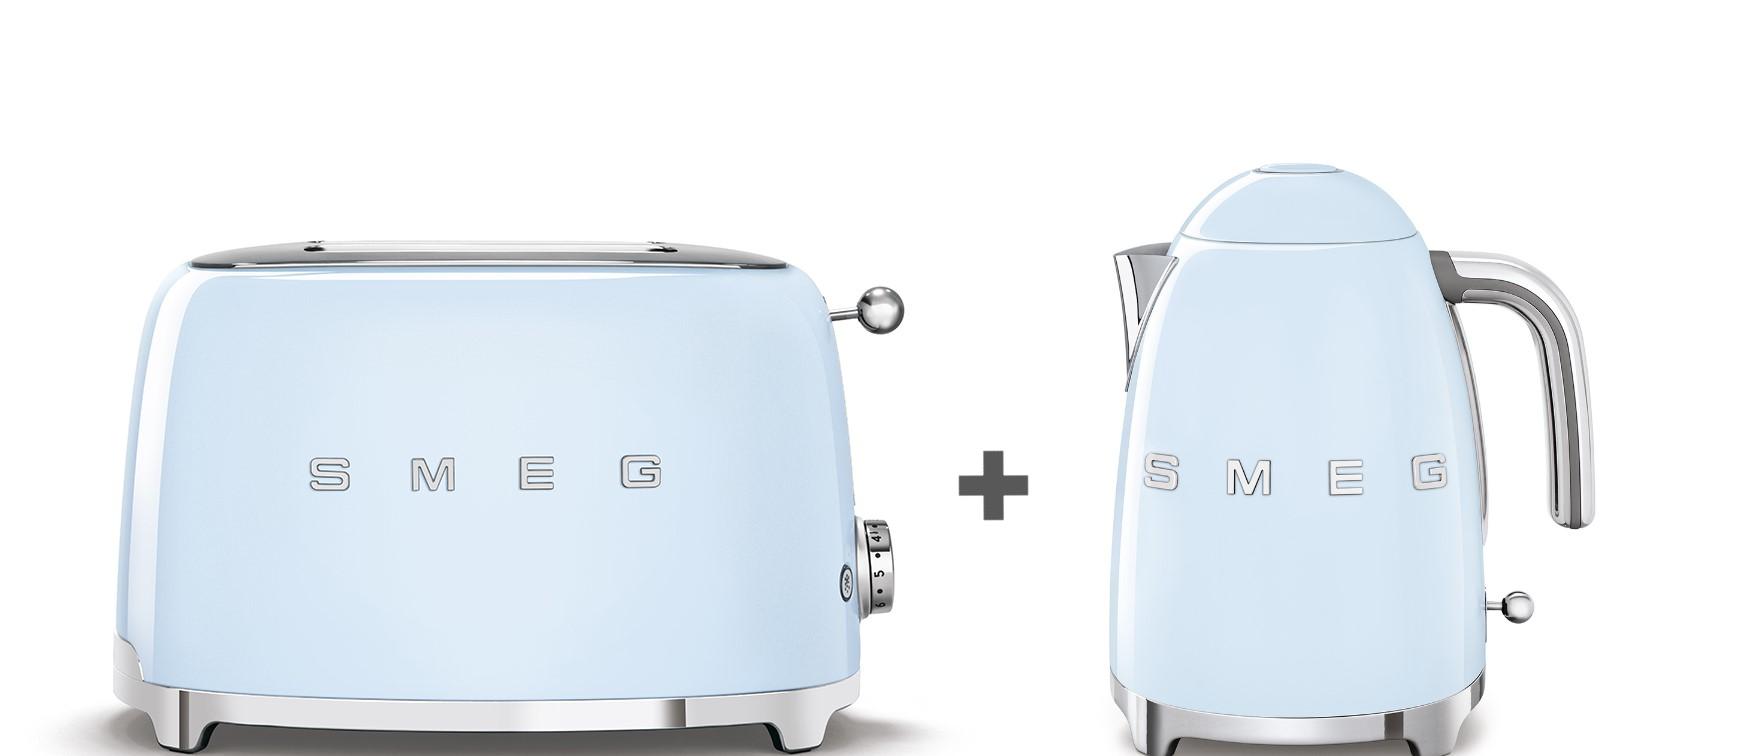 توستر كهربائي بشريحتين 950 واط وغلاية ماء 1.7 لتر 3000 واط عرض سميج ريترو أزرق Smeg Bundle Offer 2 Slice Toaster + Kettle